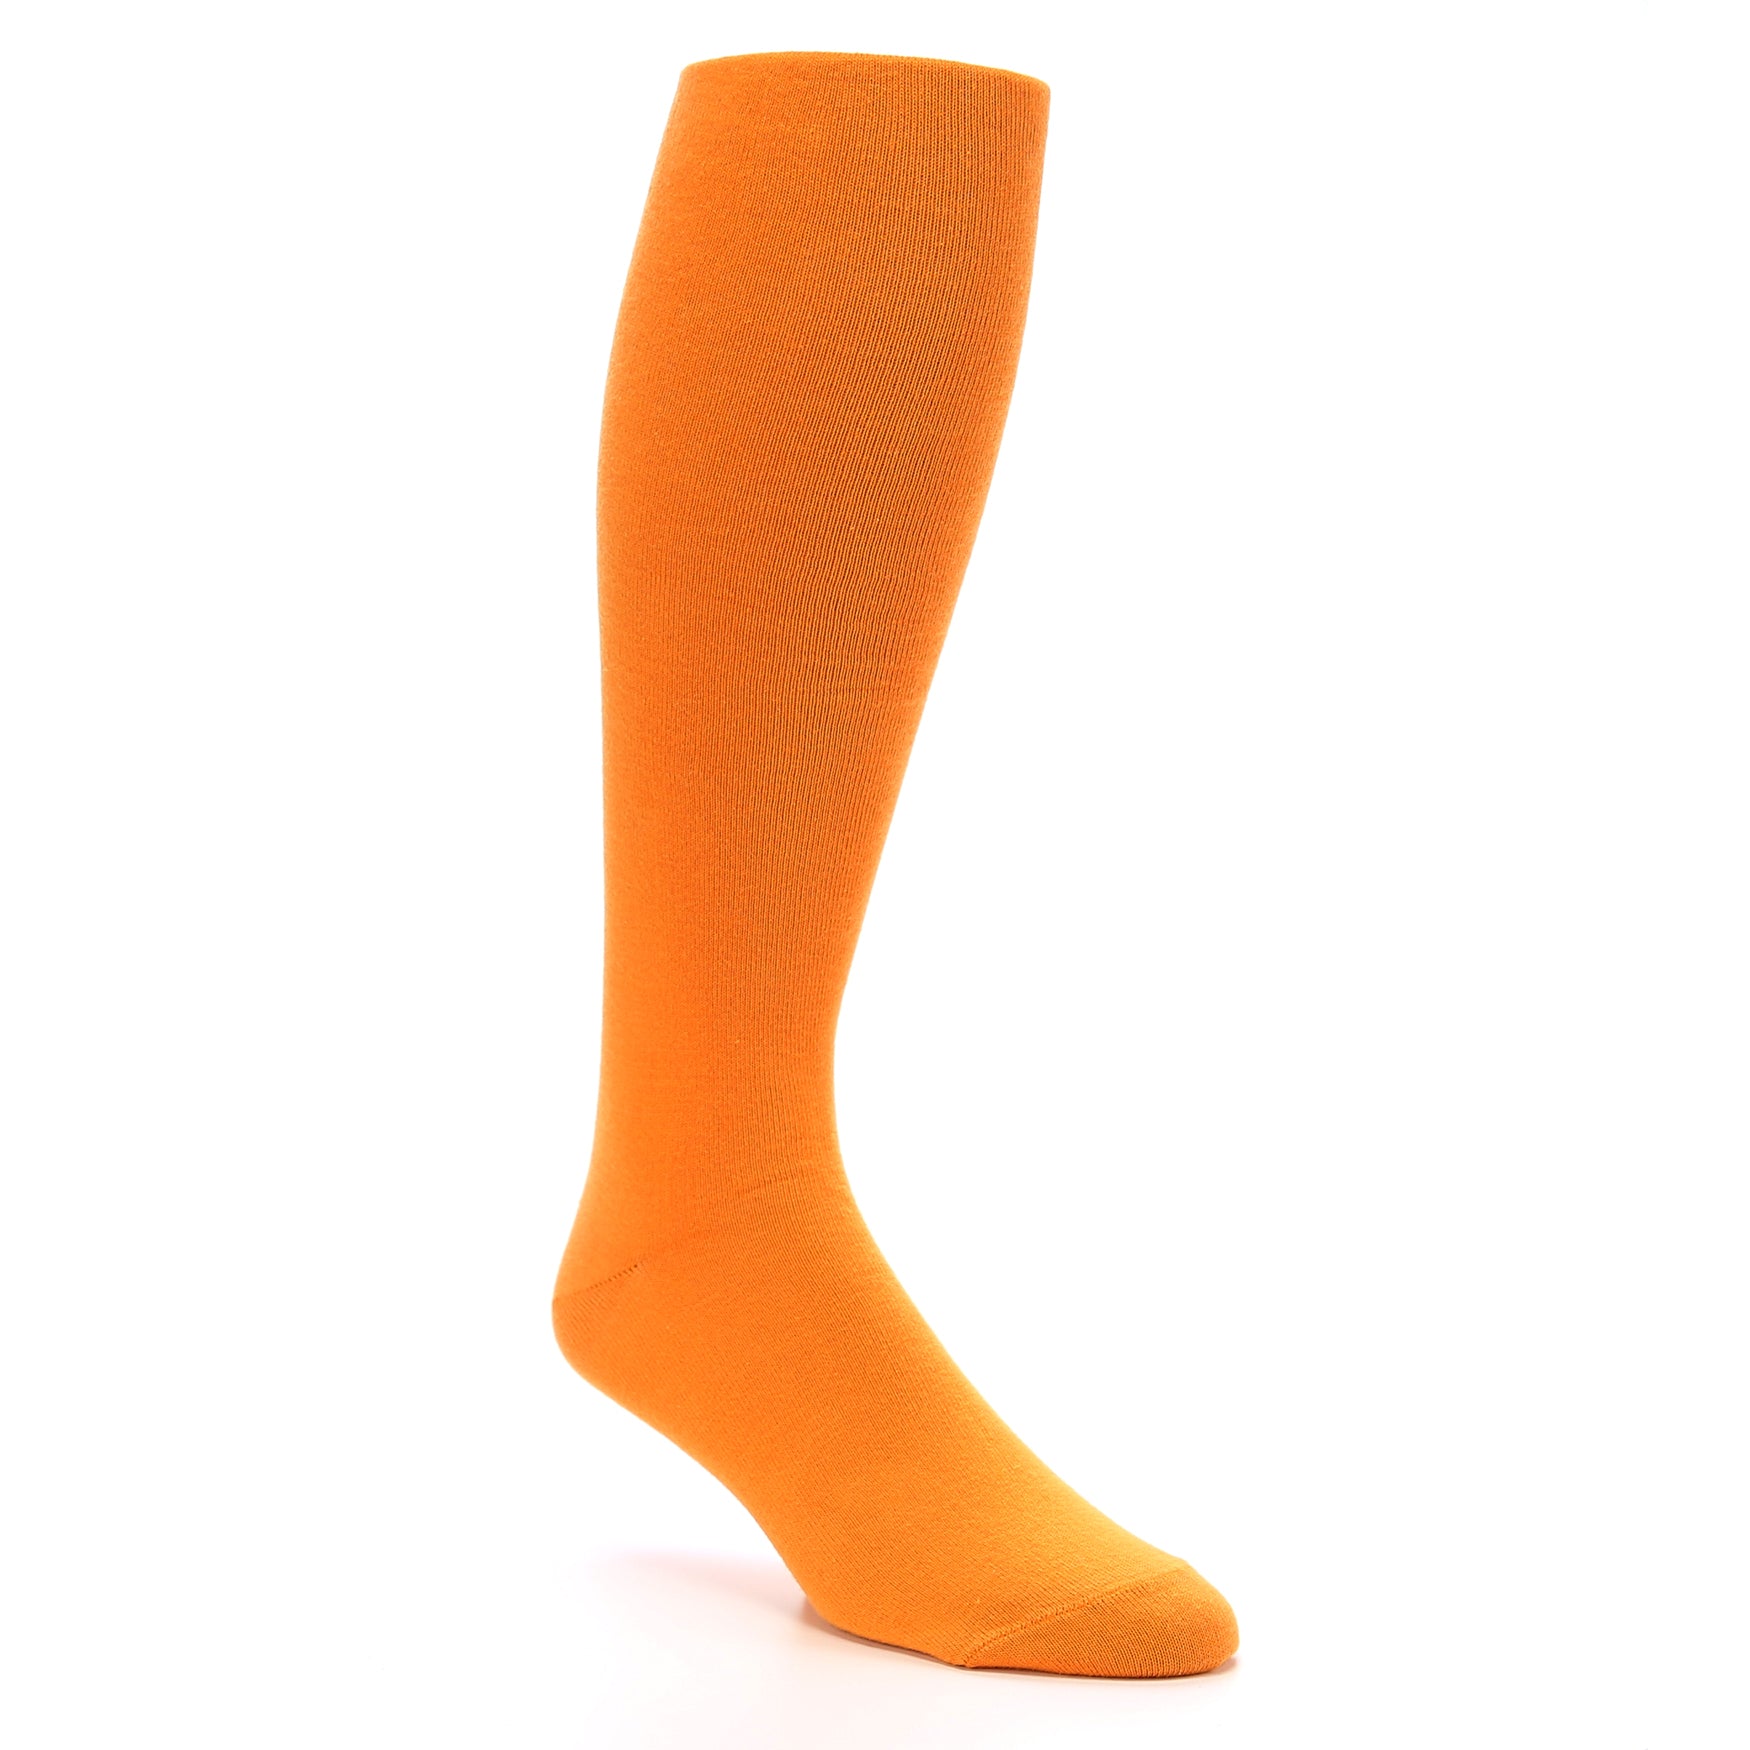 Tangerine Orange Men's Over the Calf Dress Socks